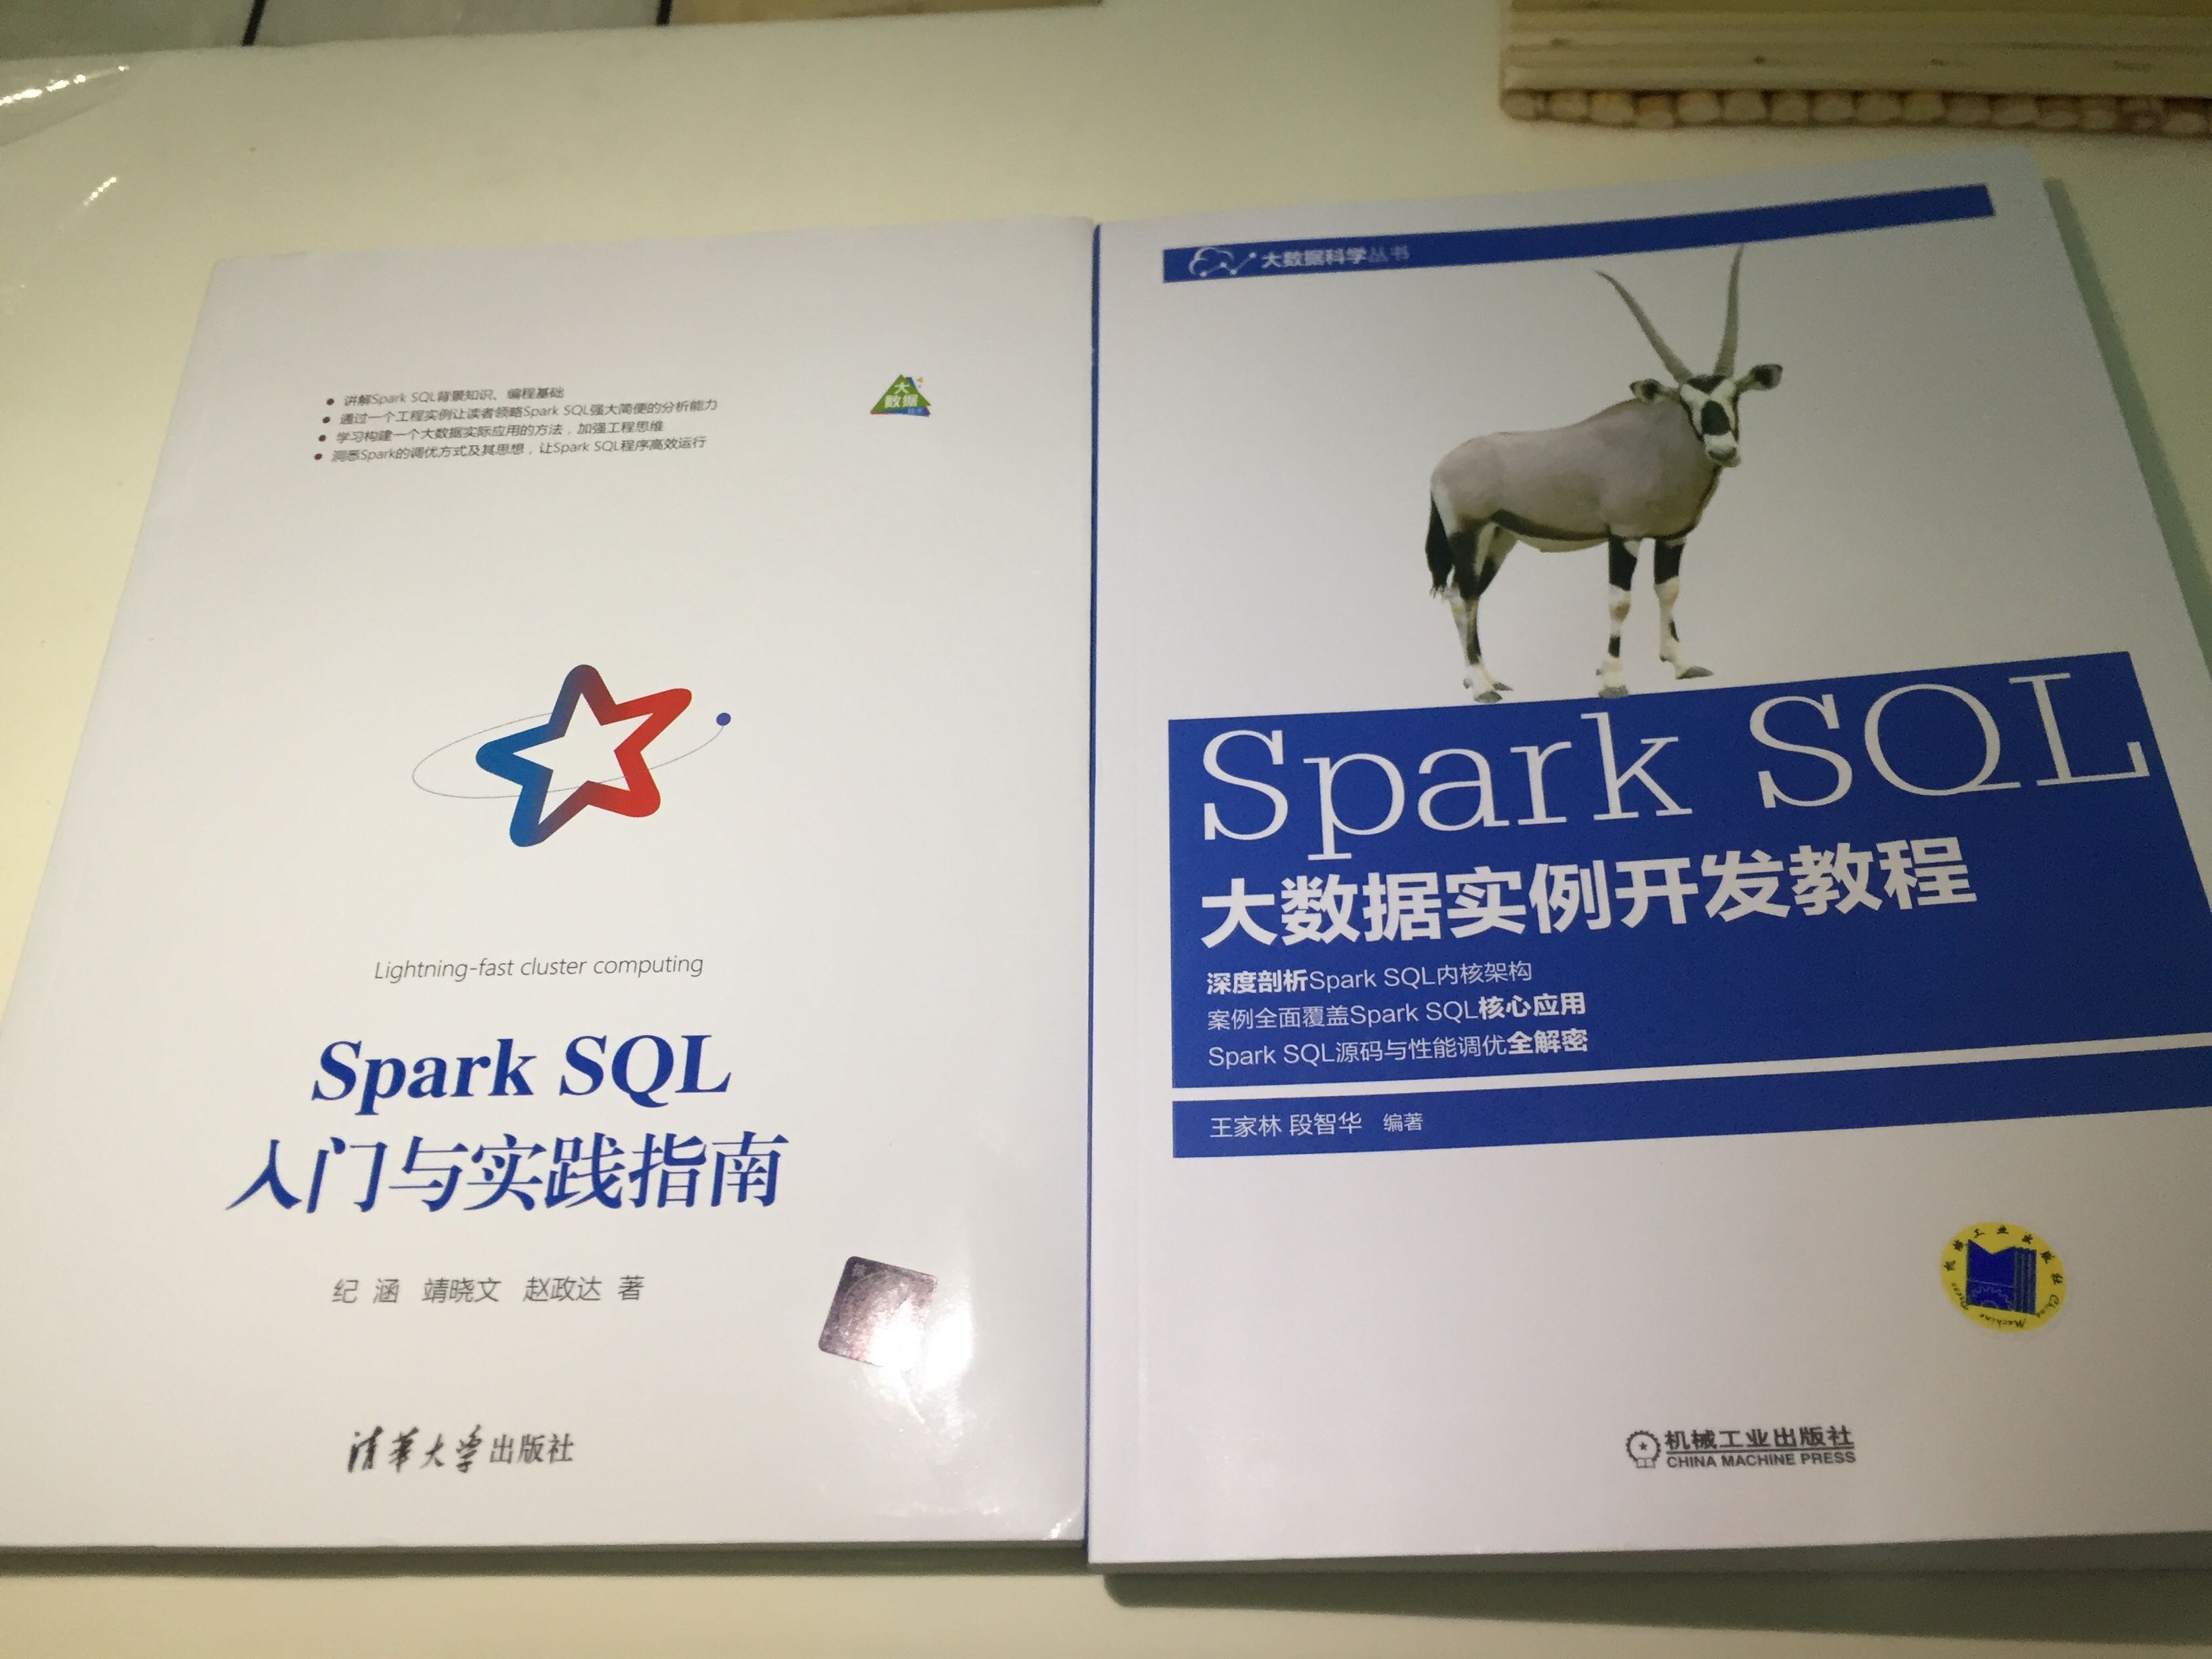 买了两本，都认真研读过，本着客观公正的角度评价，《Spark SQL 大数据实例开发教程》知识点真的太老了，现在Spark 都快2.6了，这本书的知识点才是1.6的，而且那个电商的工程实例也太不走心了吧？直接从网上扒的吧。然而 这本《Spark SQL入门与实践指南》知识点是2.0的，工程实例很丰富，可以直接应用到我们现在做的智能医疗的工程中，感觉很靠谱，很贴心，在一个这本书的章节安排感觉很合理，步步为营，浅显易懂，最给人惊喜的是，这本书不但基础篇十分详实、全面，实践篇代码可以直接用，而且调优篇写的超完美，读了之后感觉瞬间 项目效率提高一大截、而且耗存根据 它的调优七式 真的去除了些不规范的代码导致的内存、计算的额外消耗